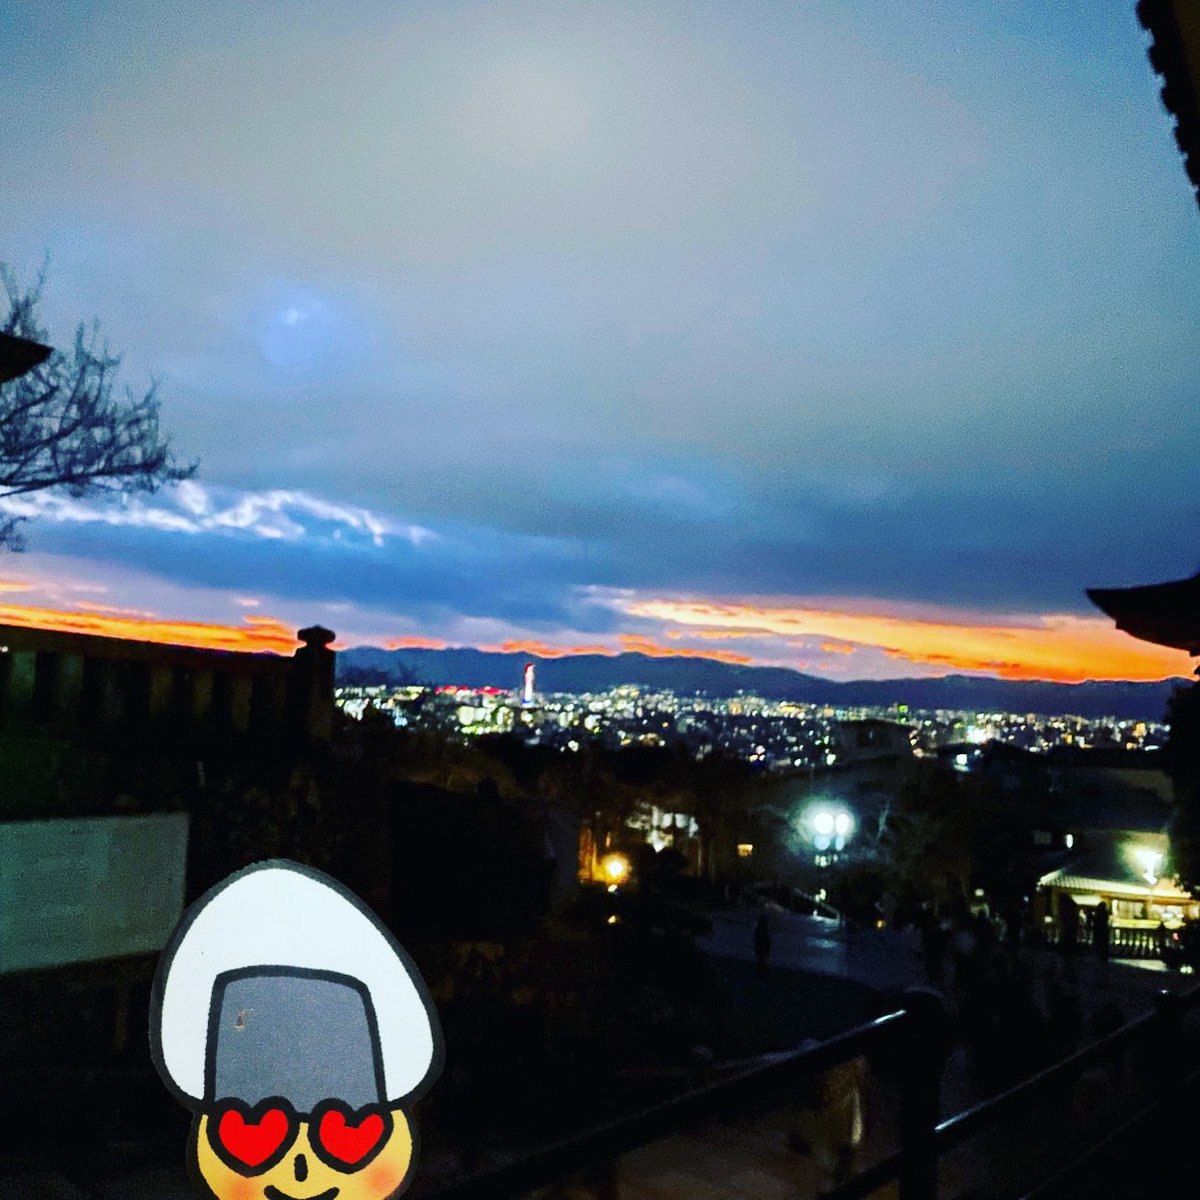 おむすびきのこさんは京都が大好き❤️ お正月に清水寺にお参りしたよ。夕暮れ綺麗だな☺️ Omusubi mushroom loves Kyoto!